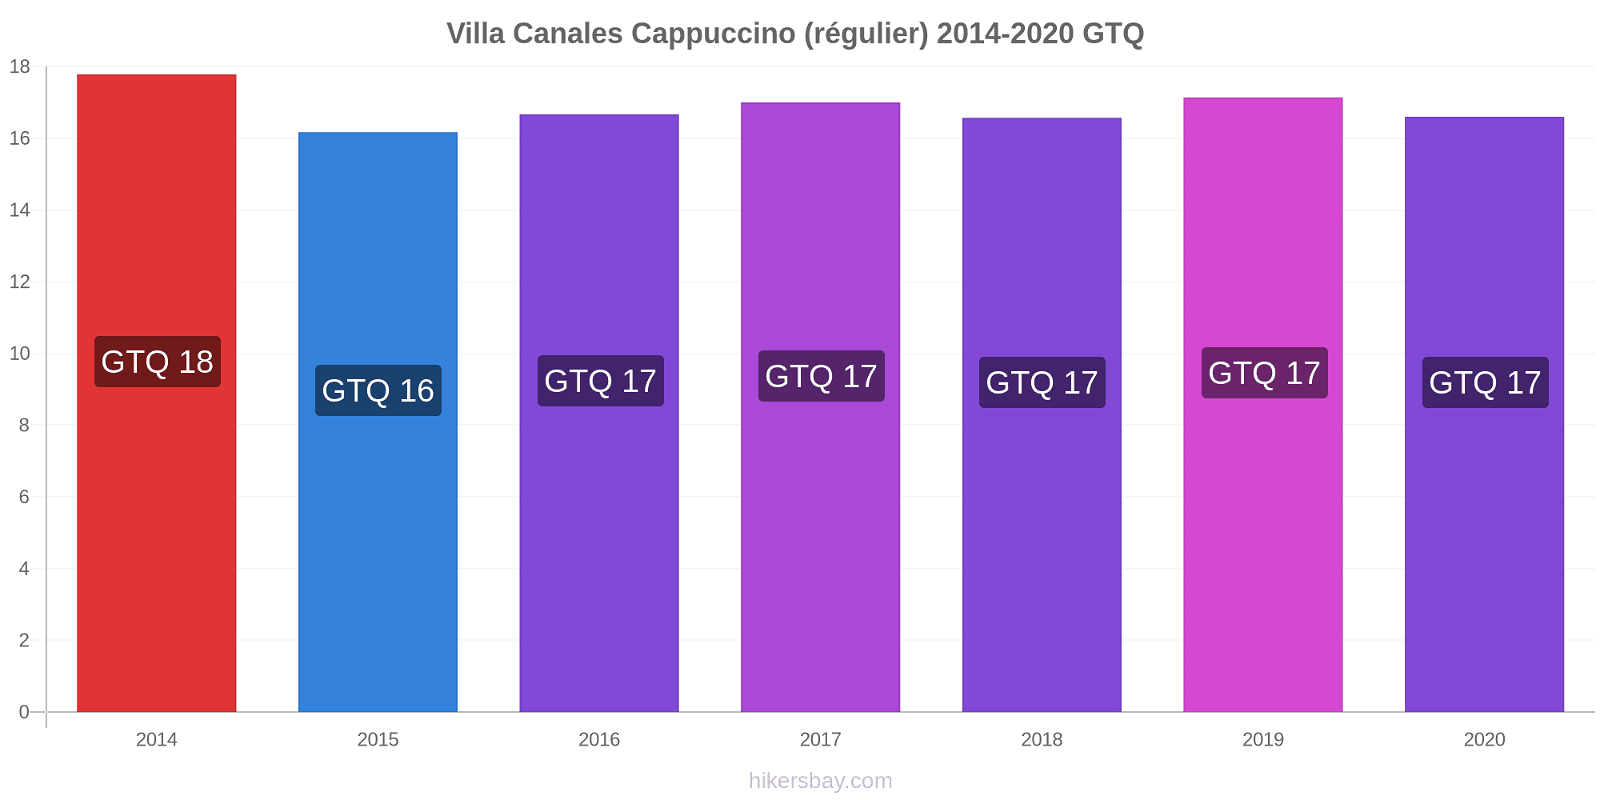 Villa Canales changements de prix Cappuccino (régulier) hikersbay.com